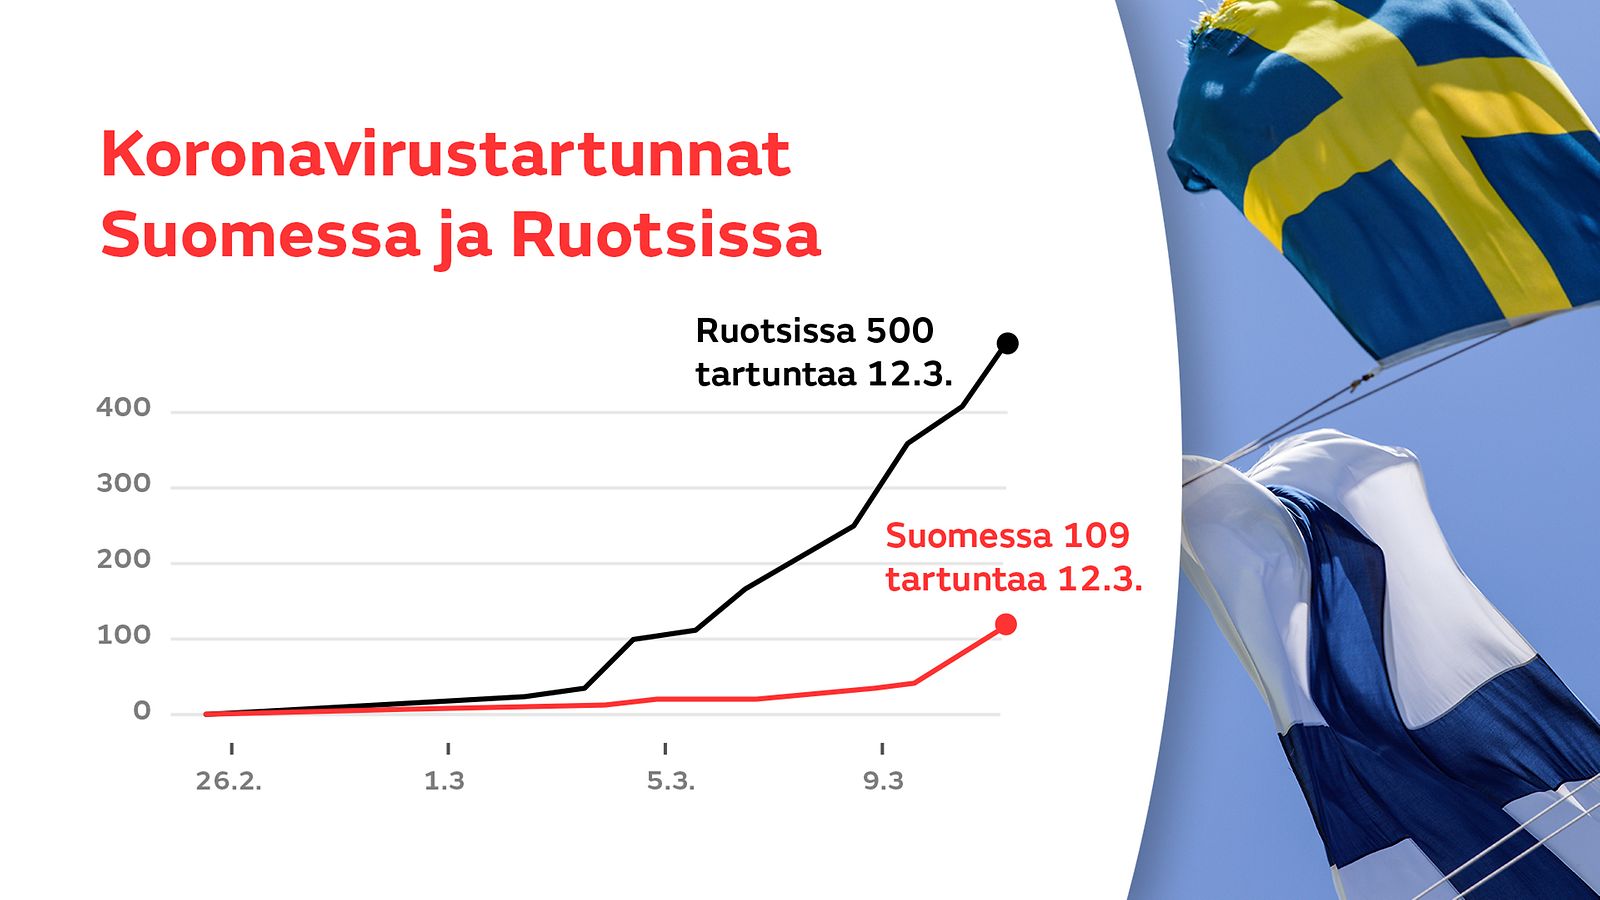 Näin koronatartunnat ovat lisääntyneet – katso grafiikka: Suomessa yli 100  tartuntaa, Ruotsissa 500 – 